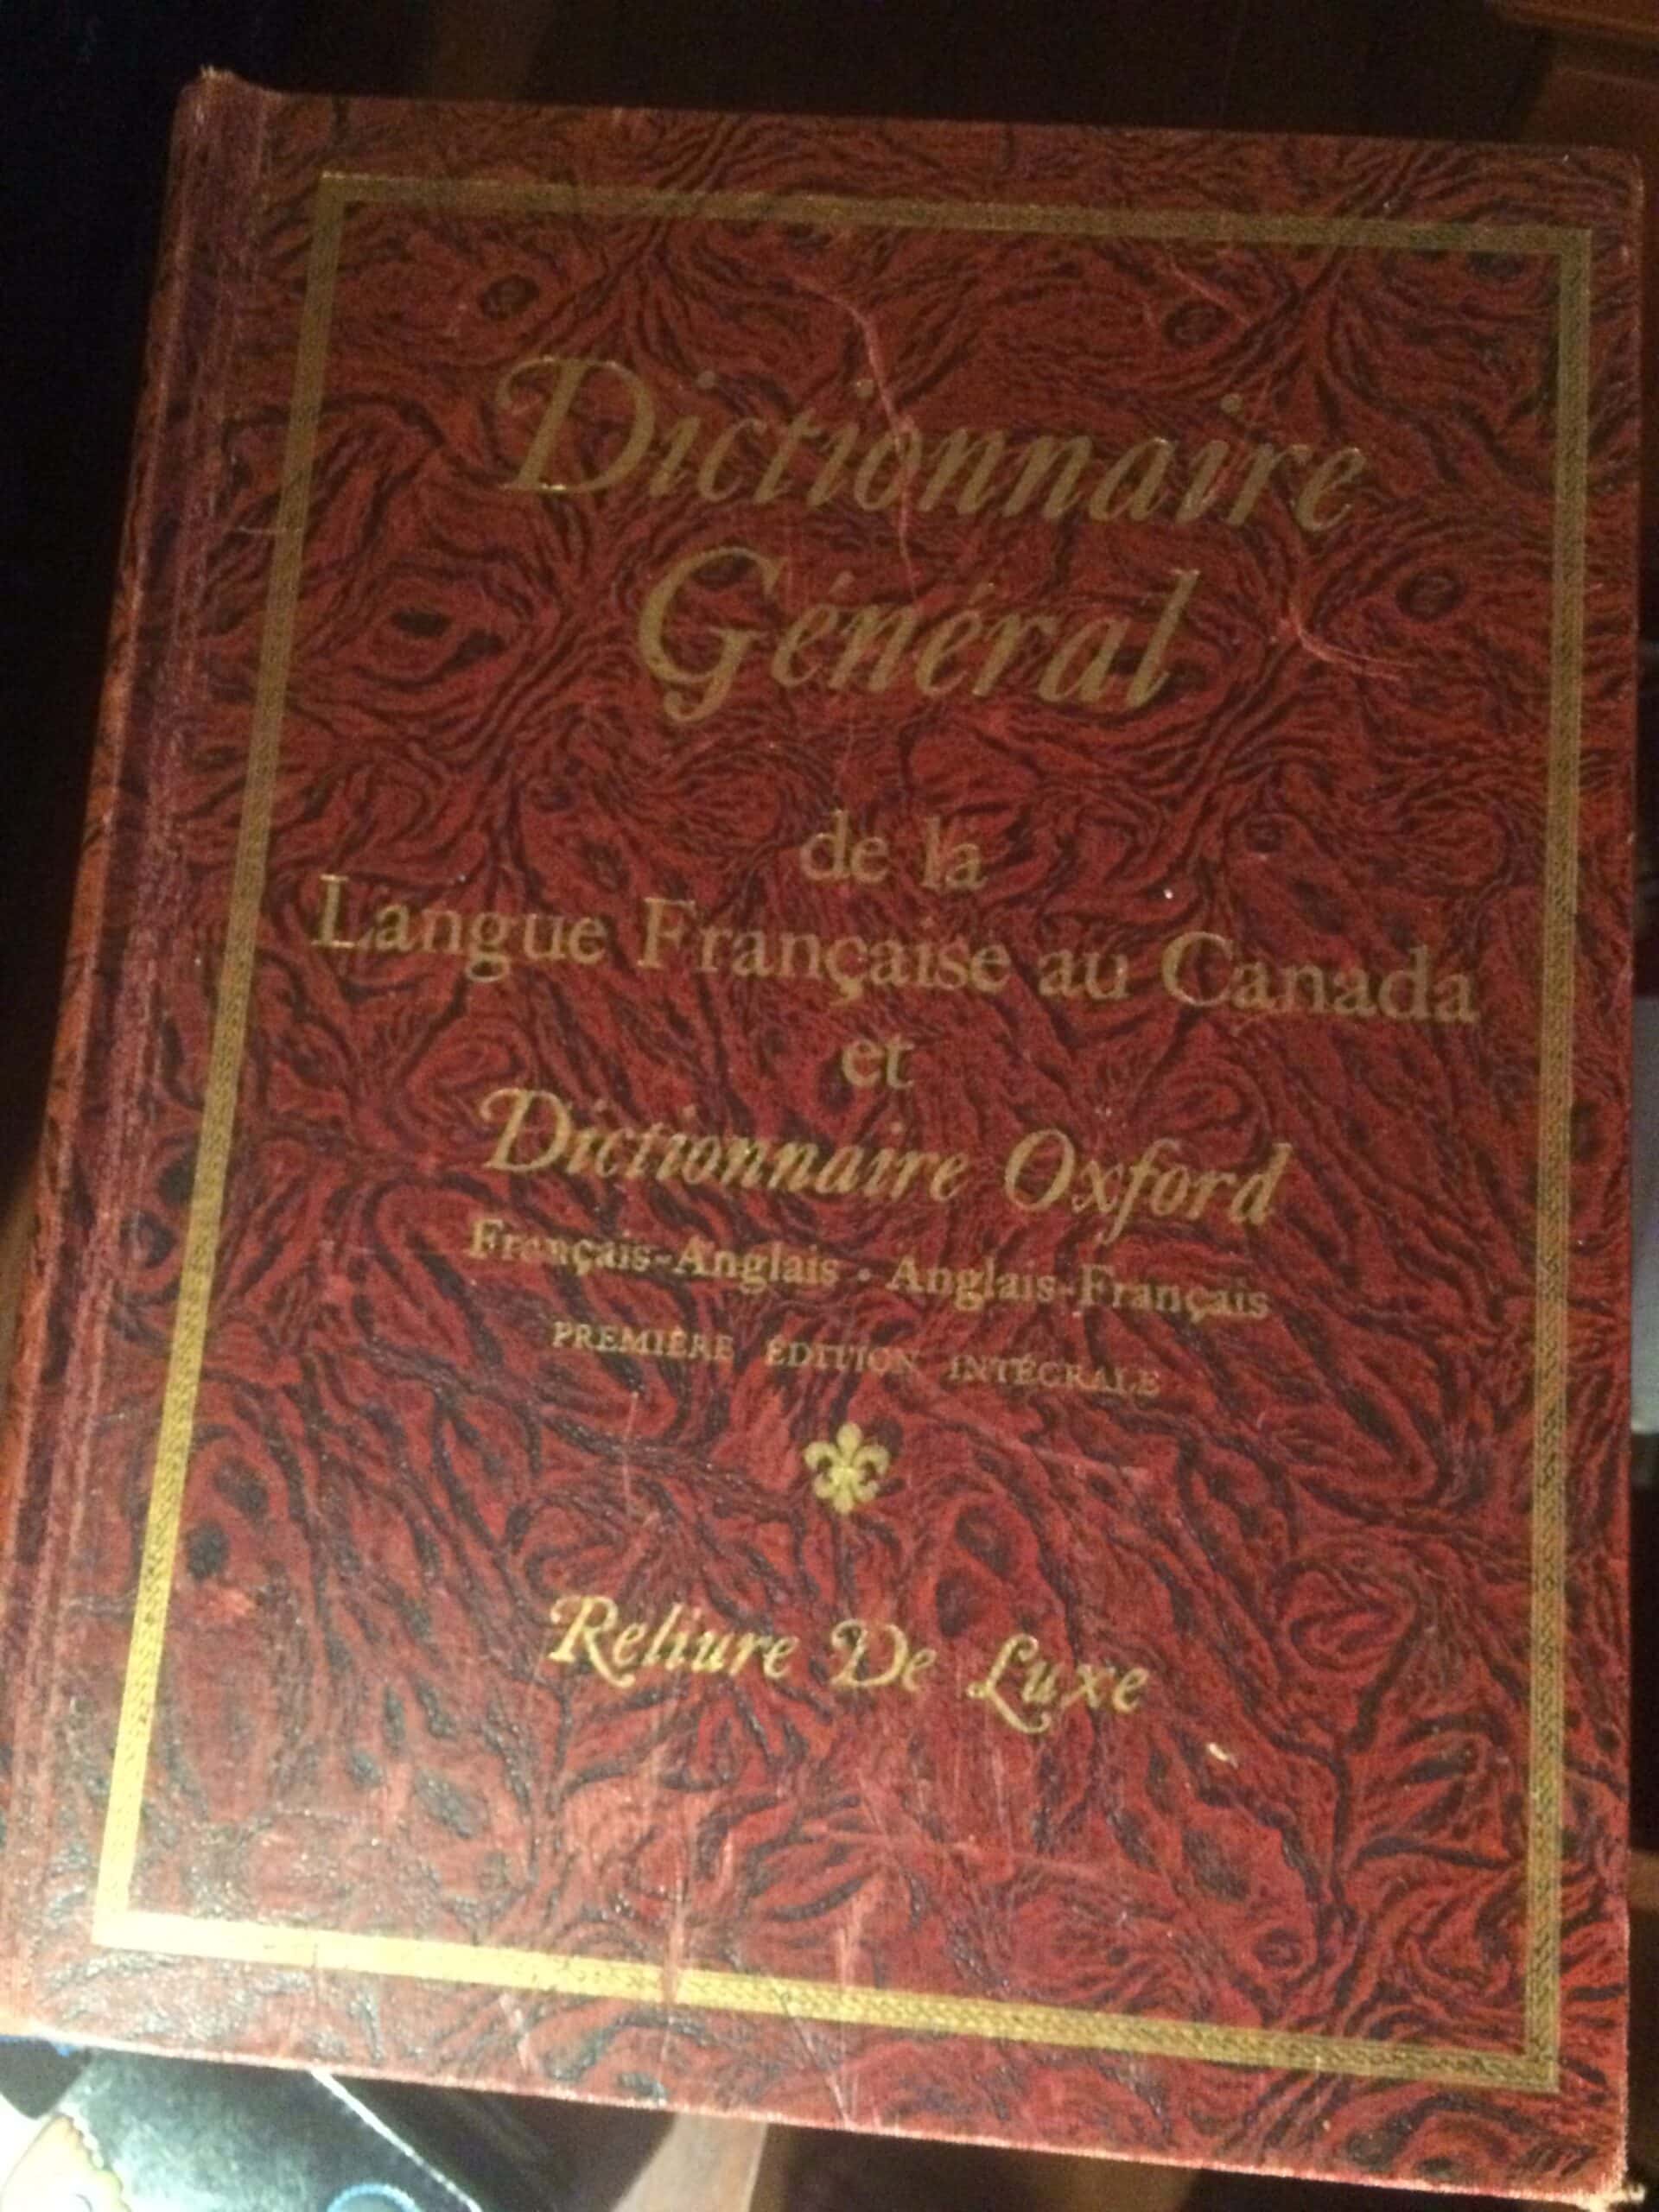 Estimation Livre, manuscrit: dictionnaire général de la langue française au Canada et dictionnaire oxford